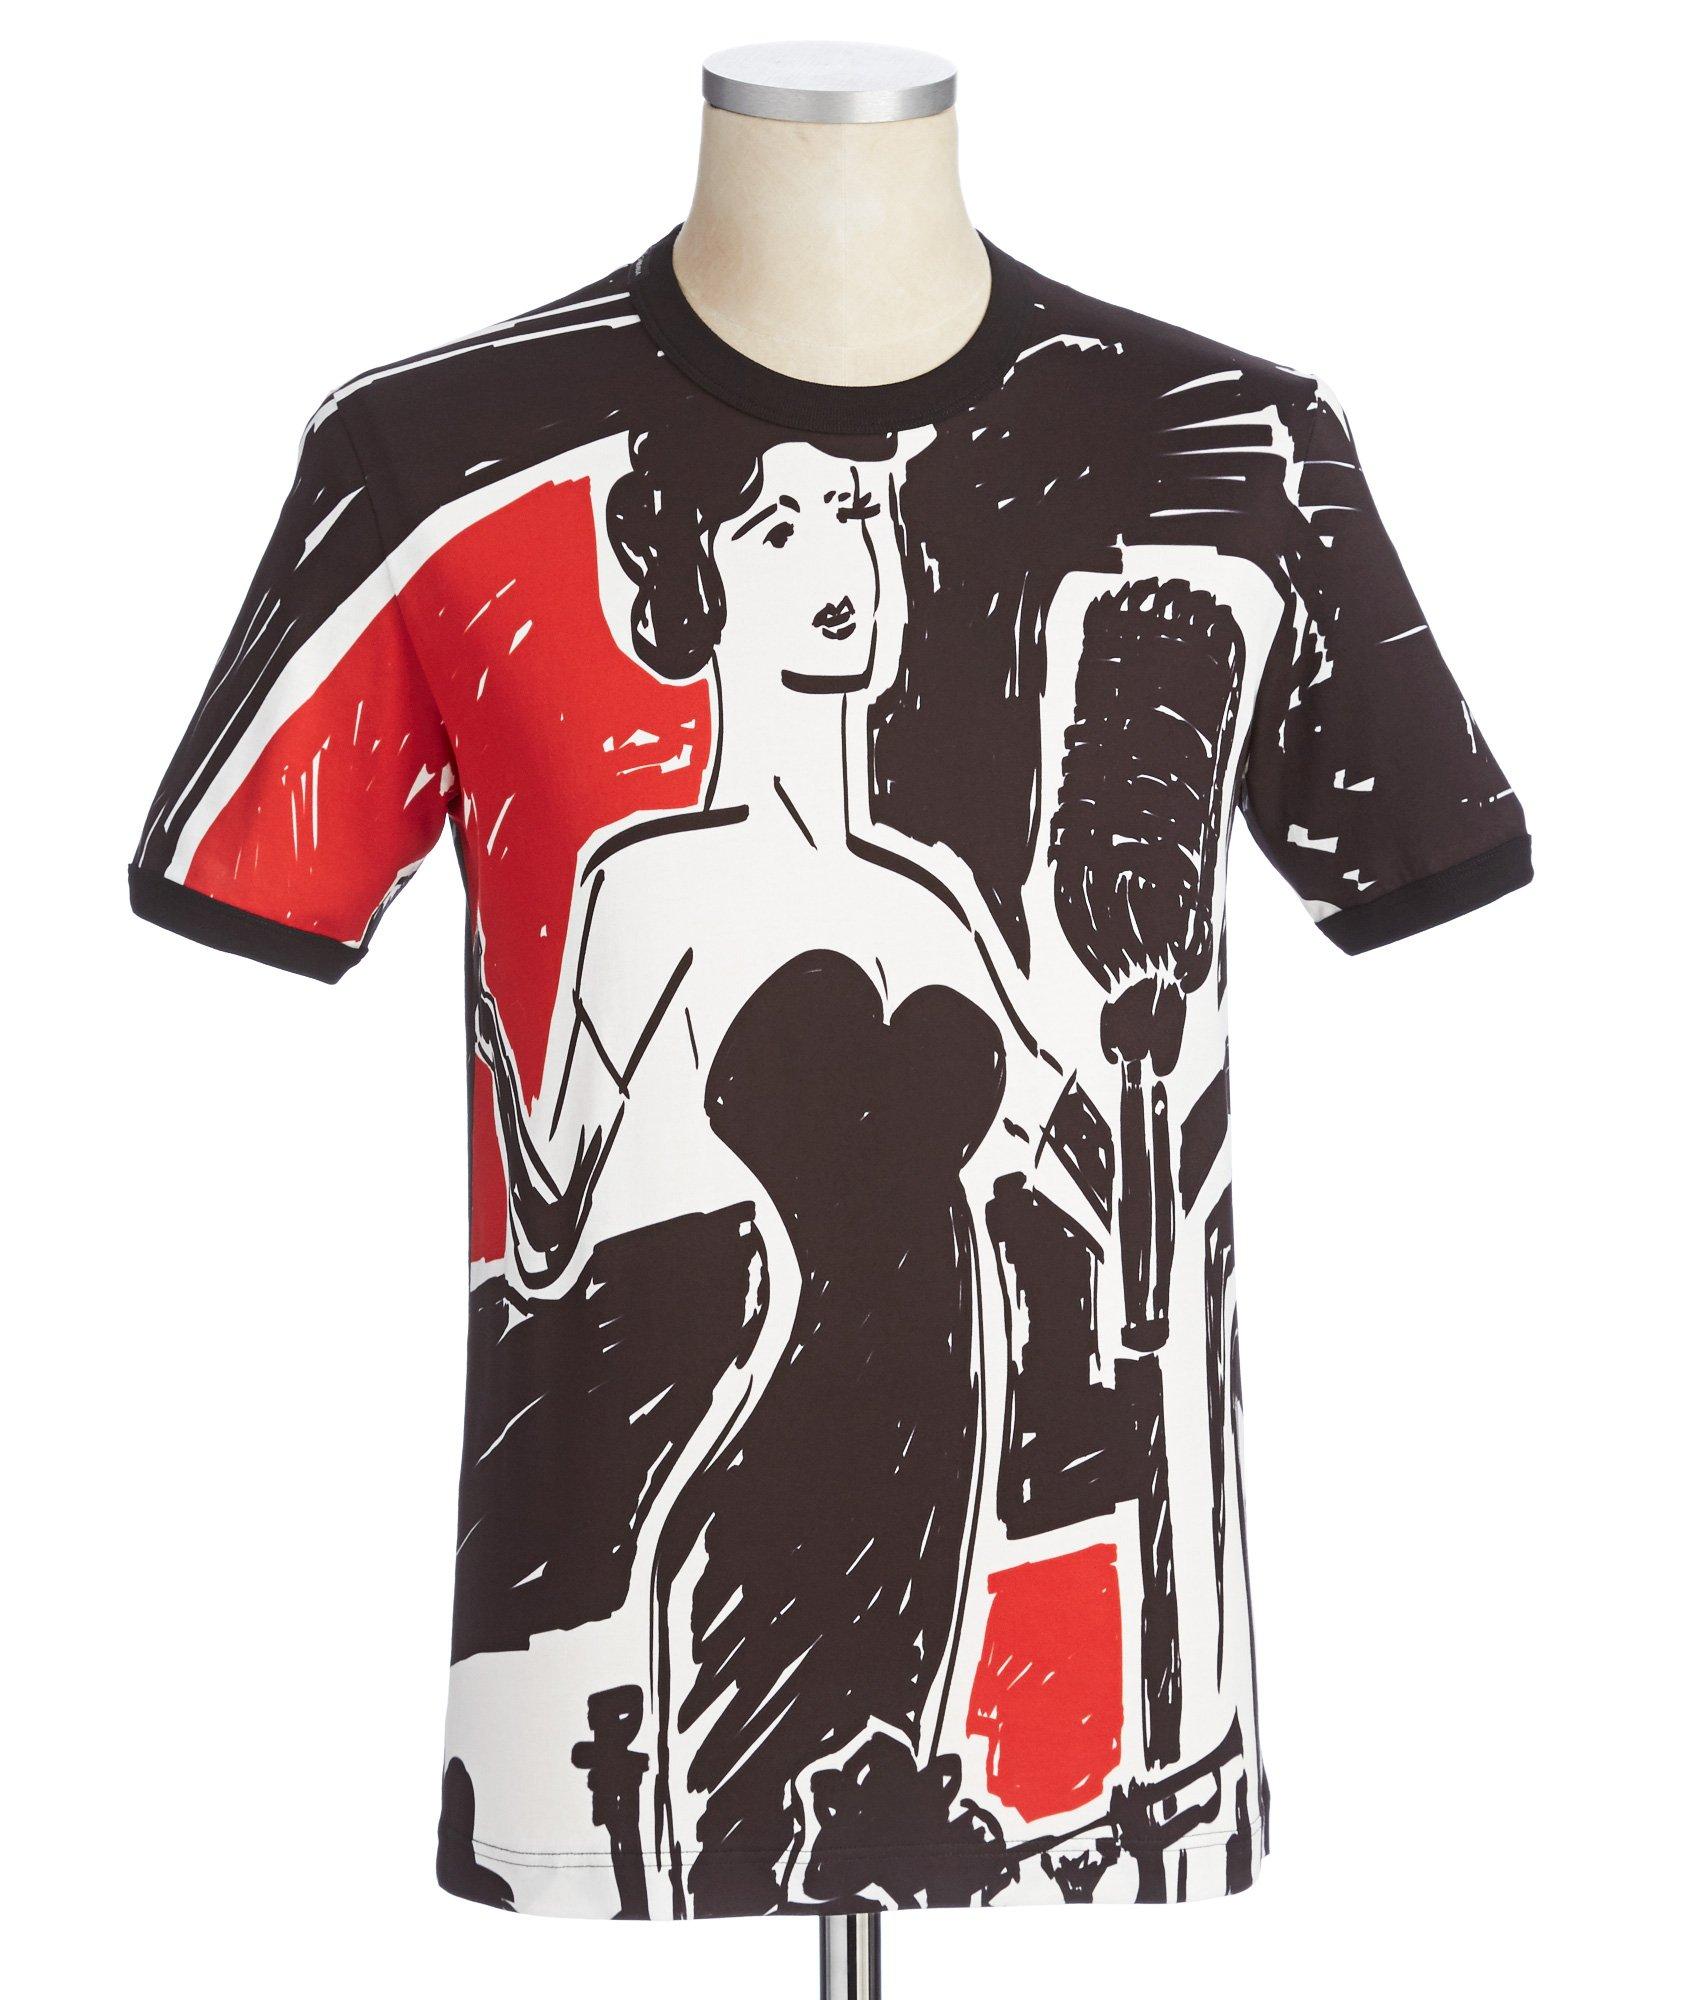 Jazz Printed T-Shirt image 0